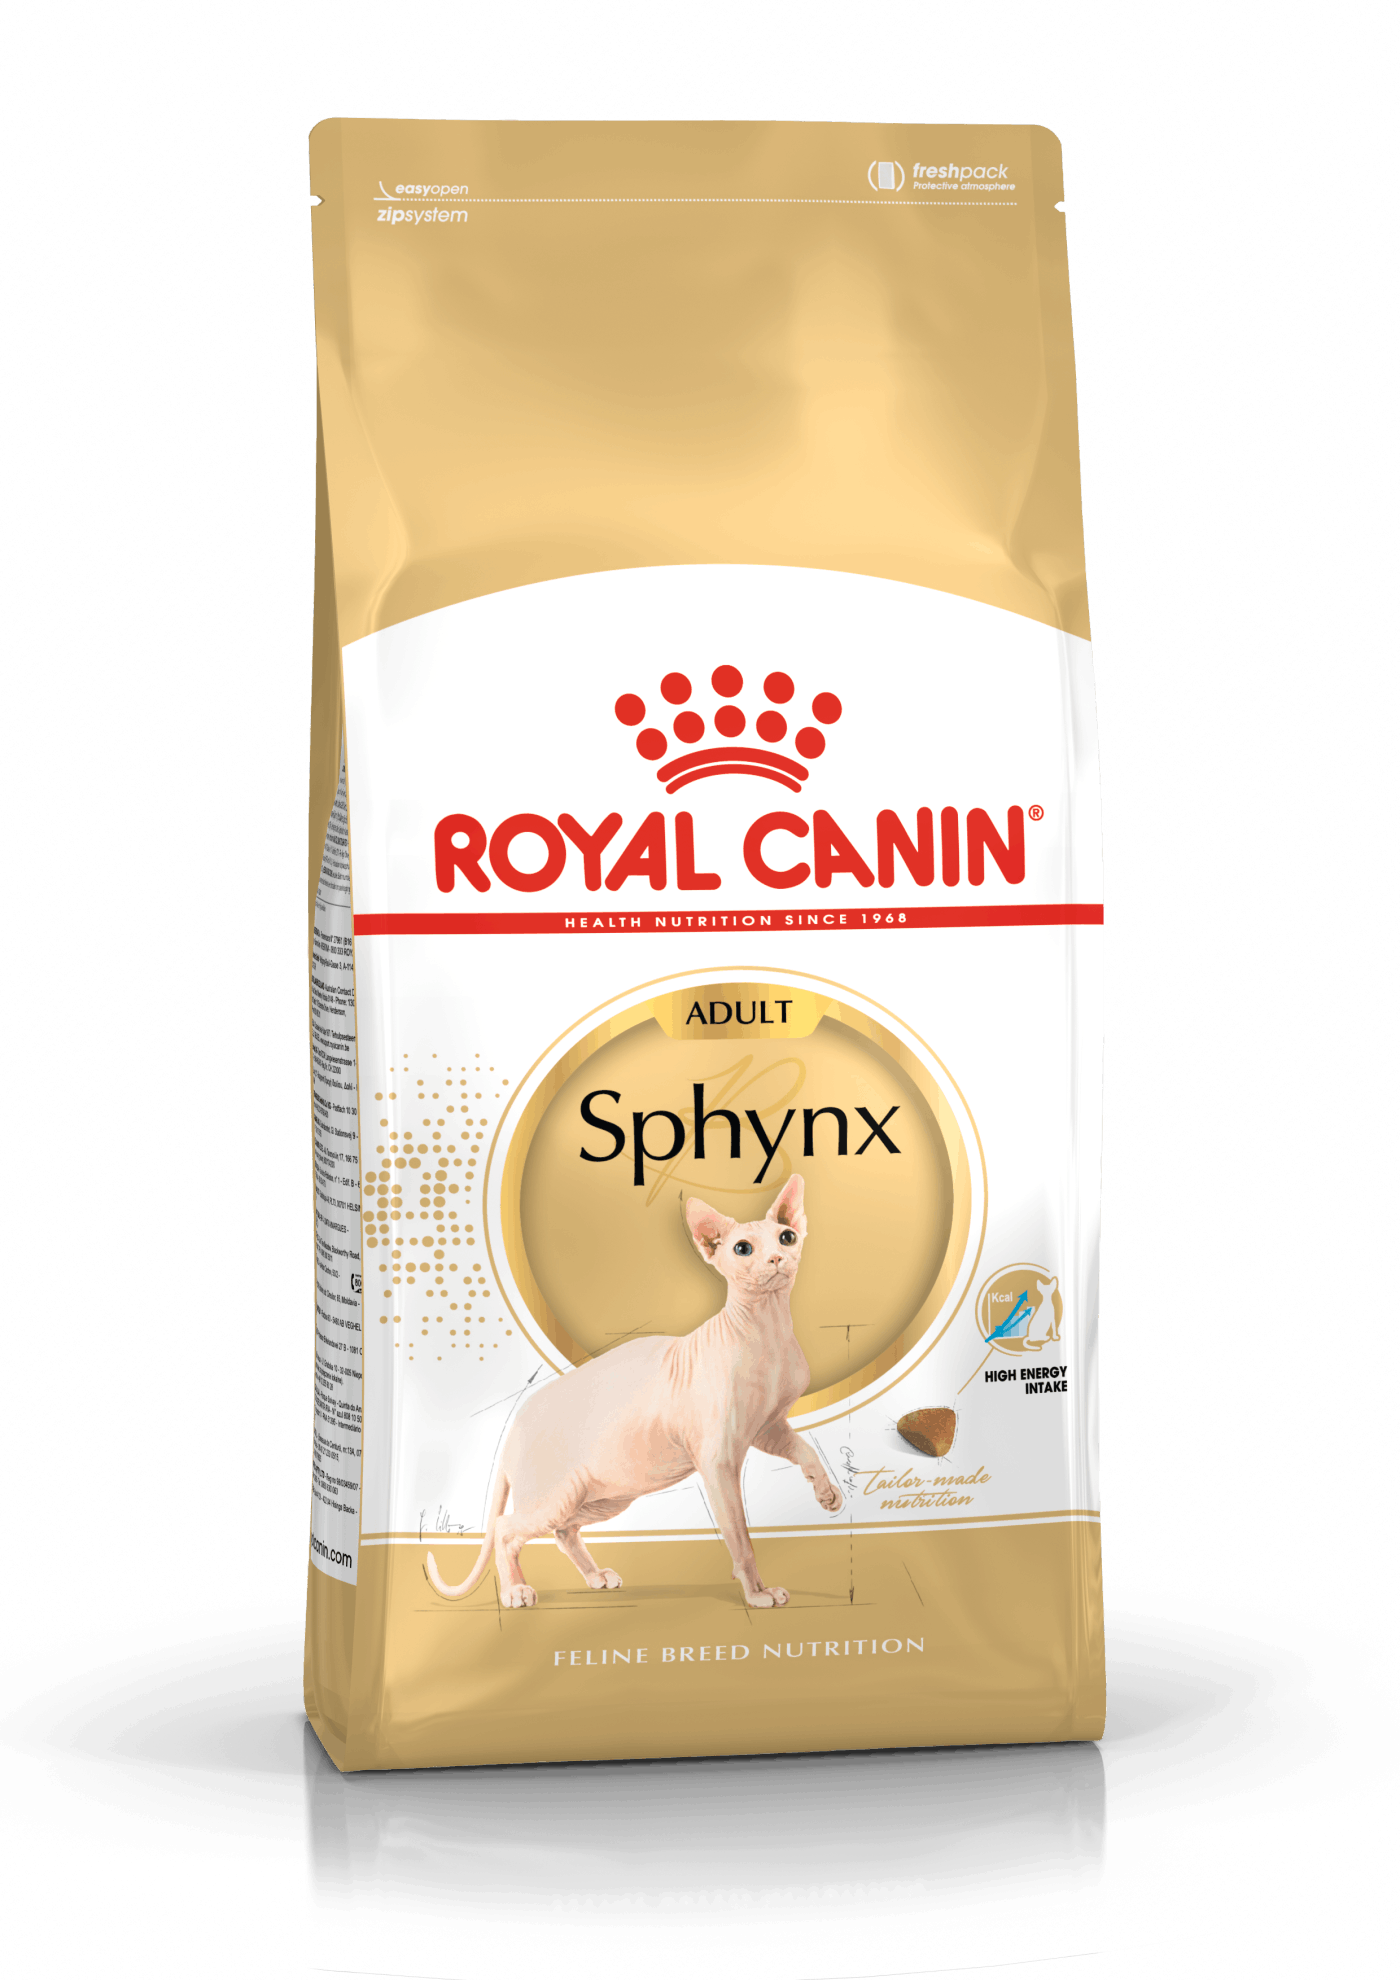 Billede af Royal Canin Sphynx Adult 2kg hos Alttilhundogkat.dk